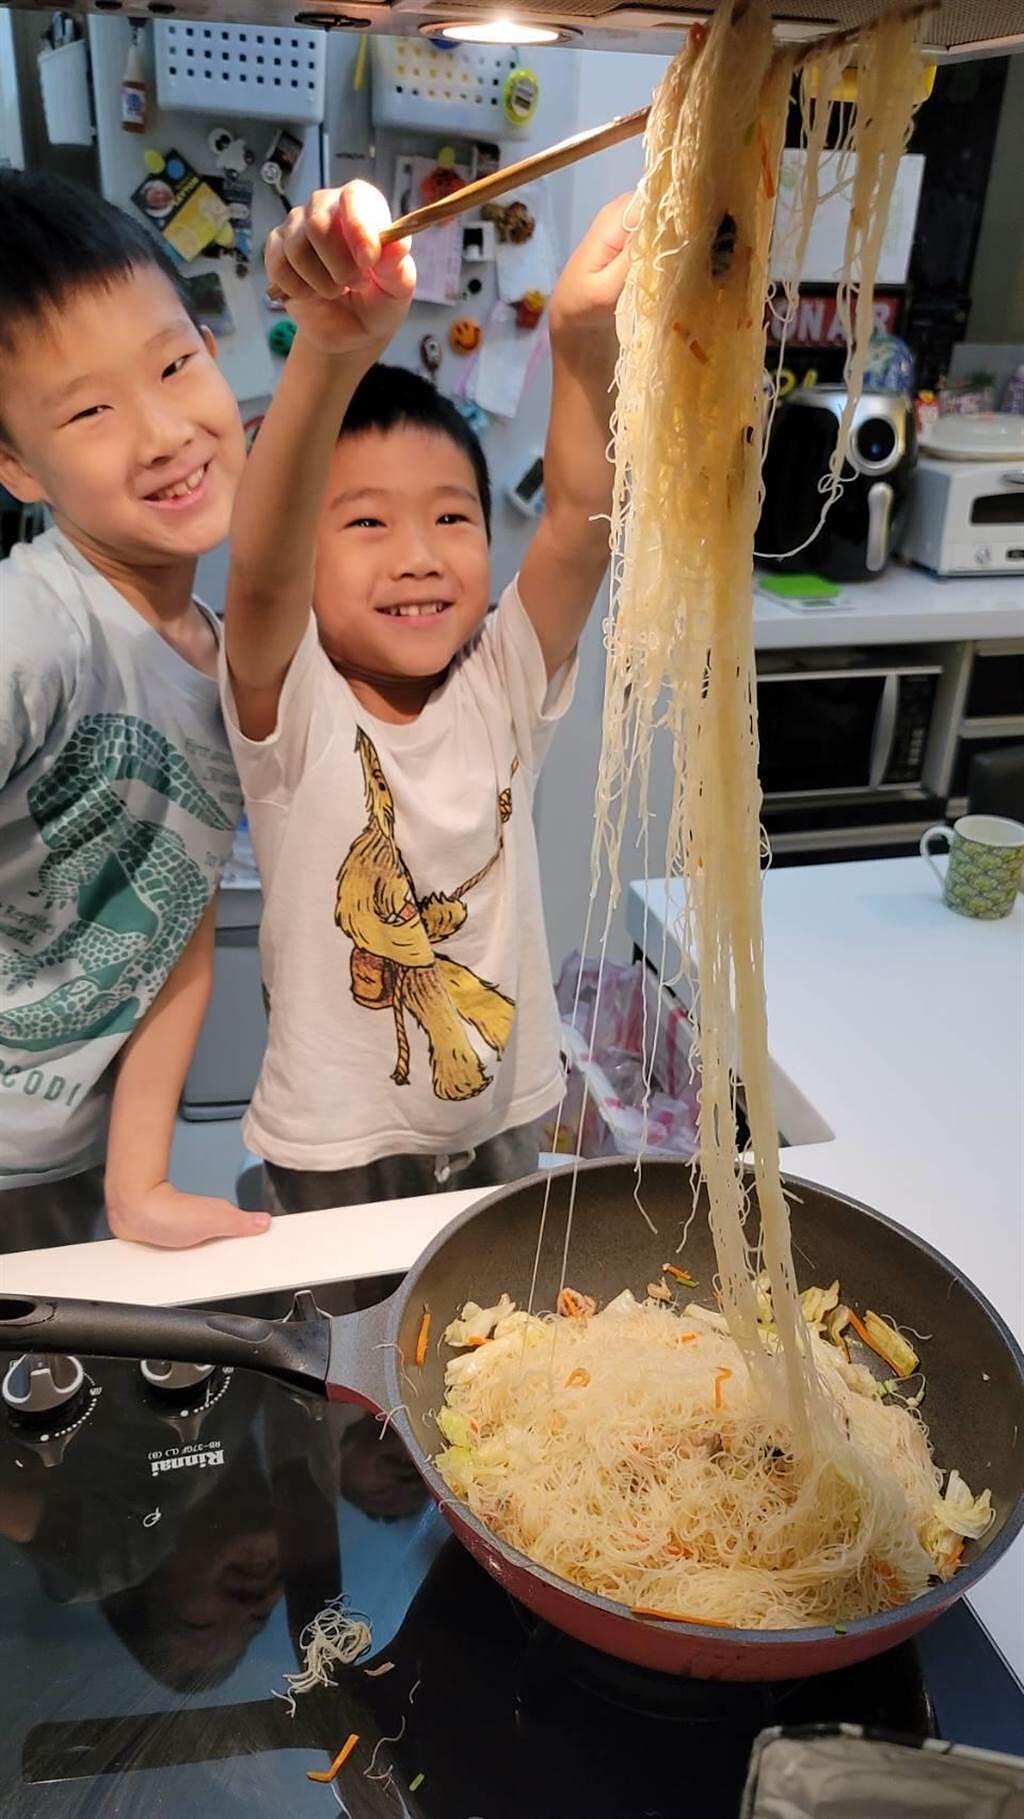 蔣偉文在家下廚，兩個兒子當小幫手把米粉拉開拌勻，玩得不亦樂乎。 （艾迪昇提供）